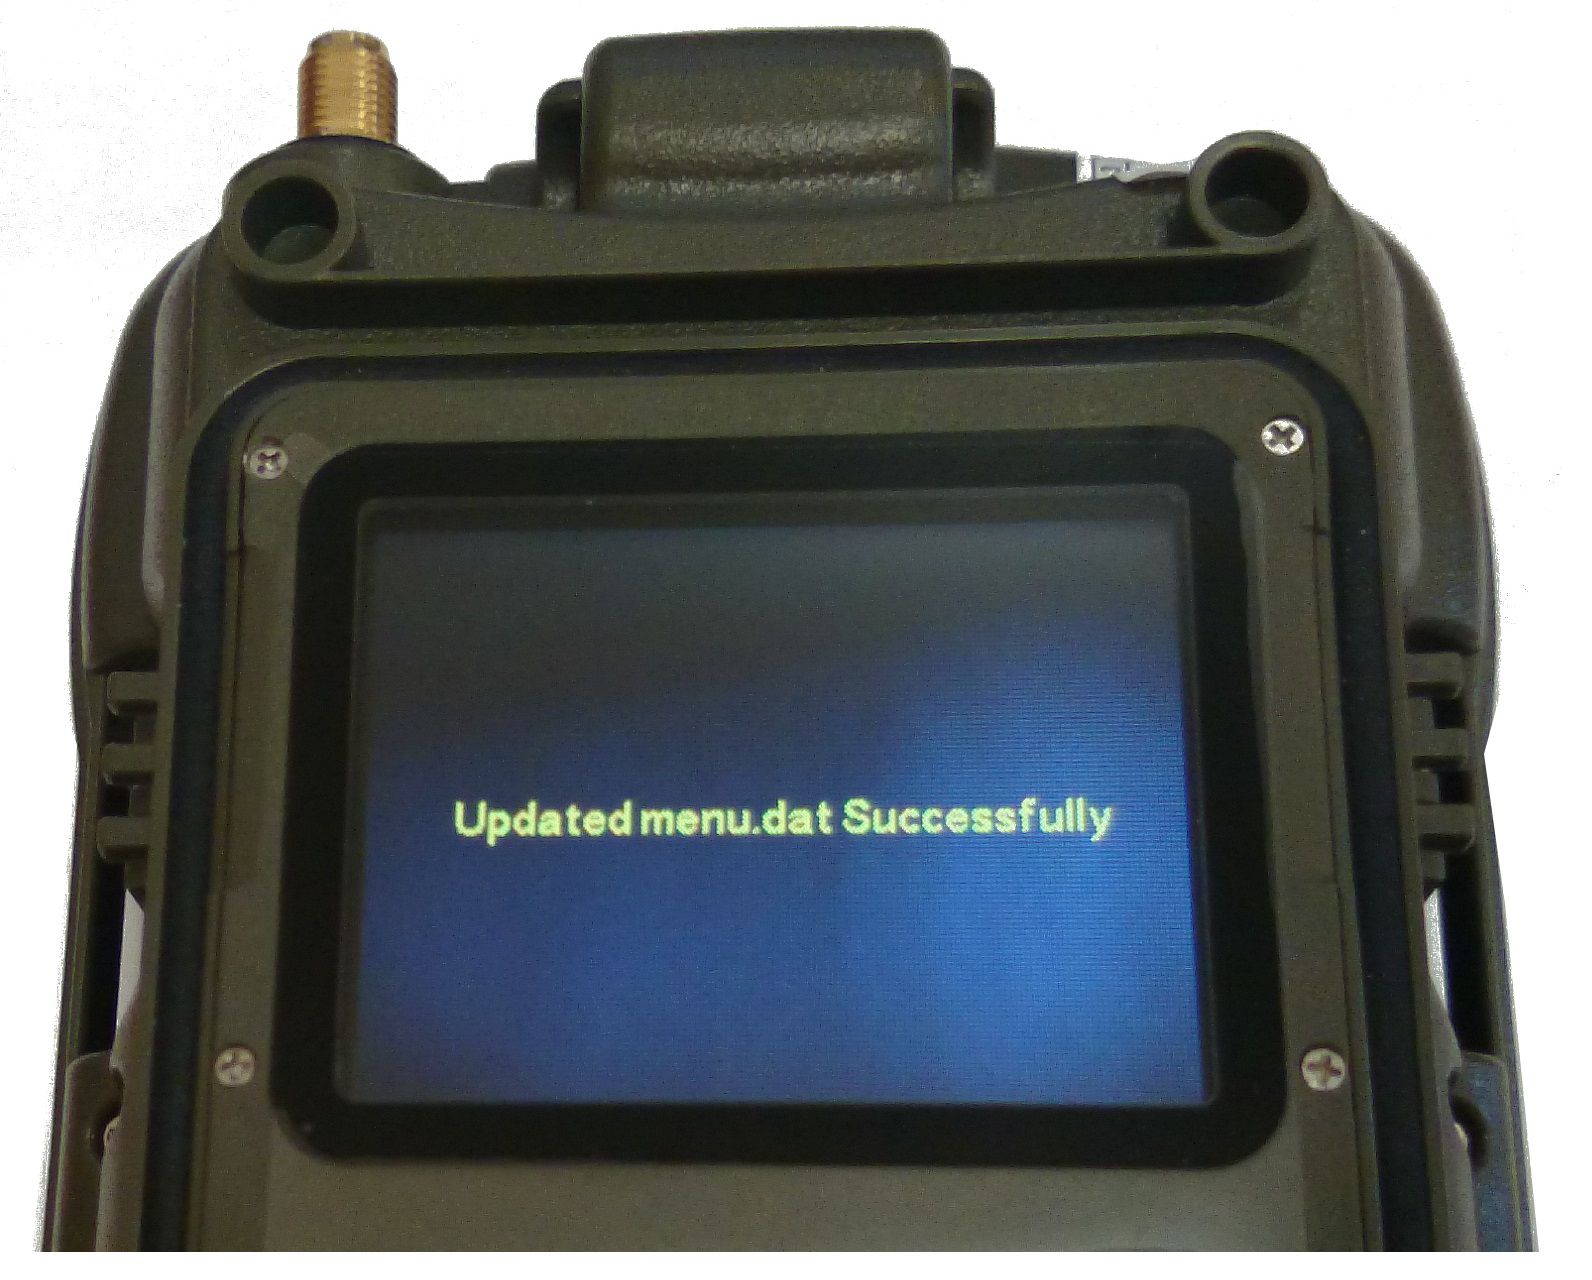 Jeśli karta SD została umieszczona bezpośrednio w komputerze, wyciągnij ją i umieść z powrotem w fotopułapce upewnij się ze kamera jest wyłączona.